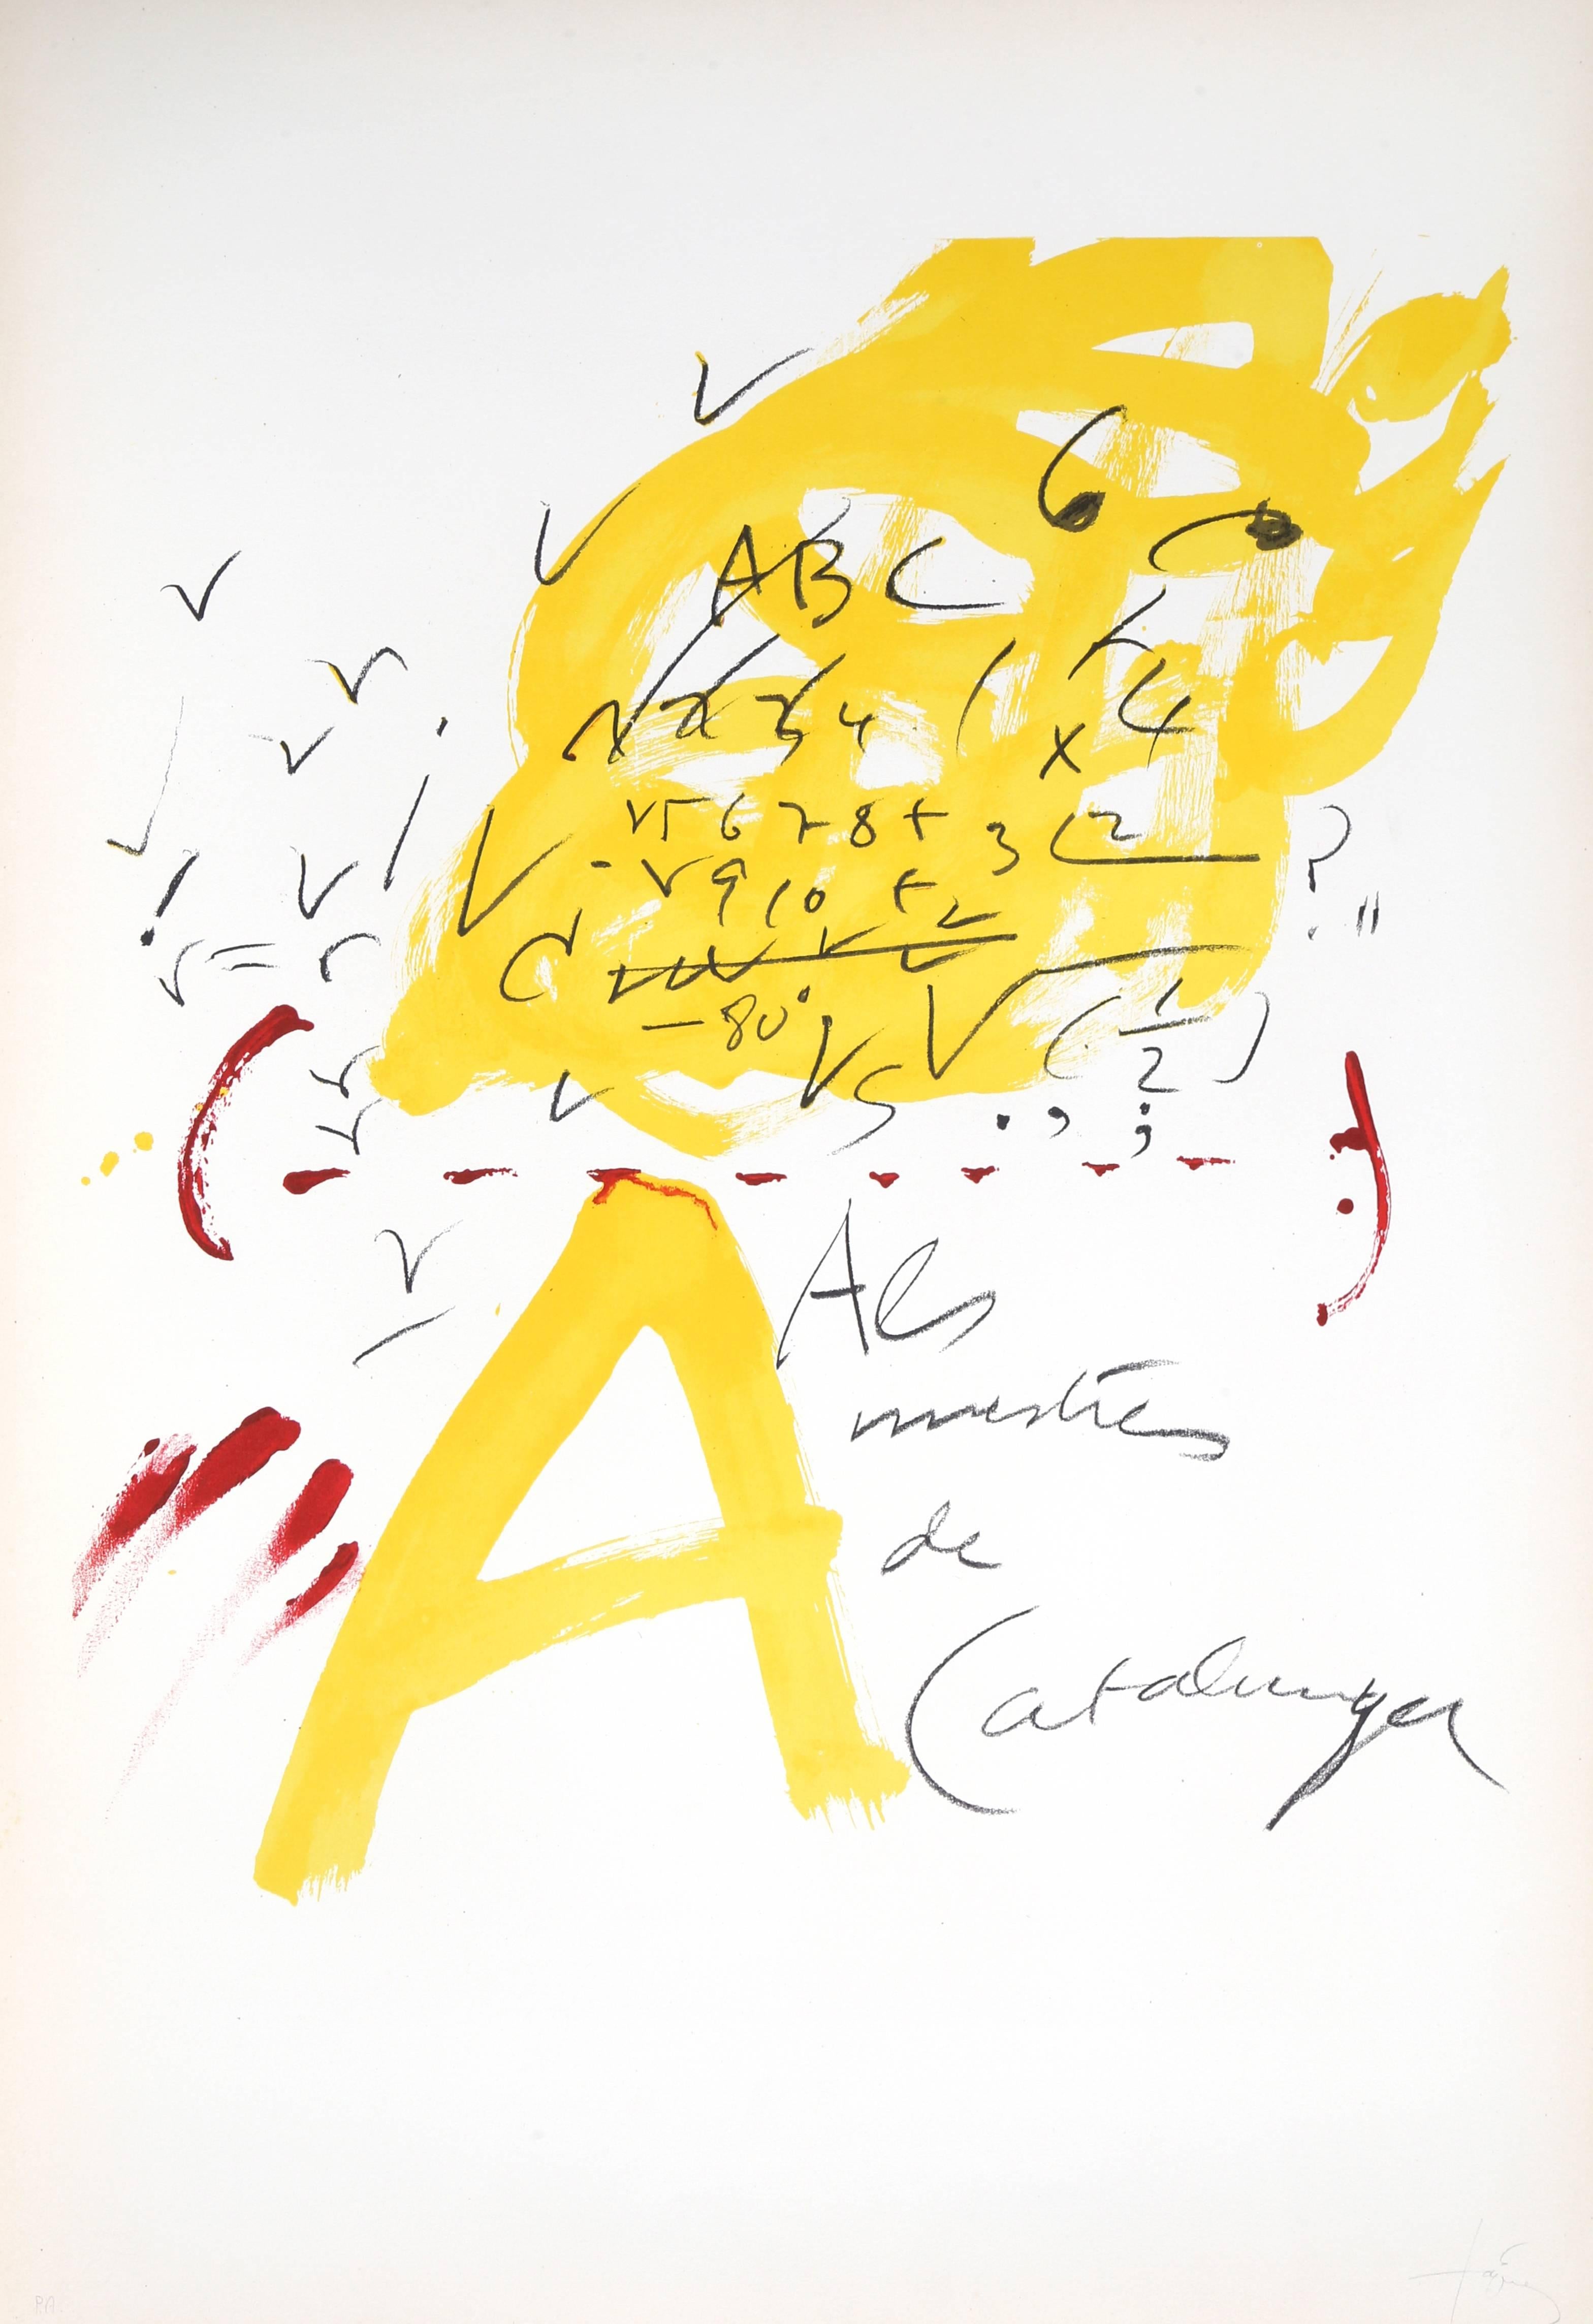 Antoni Tàpies Abstract Print - No. 3 from "Als Mestres de Catalunya, " Lithograph, 1974